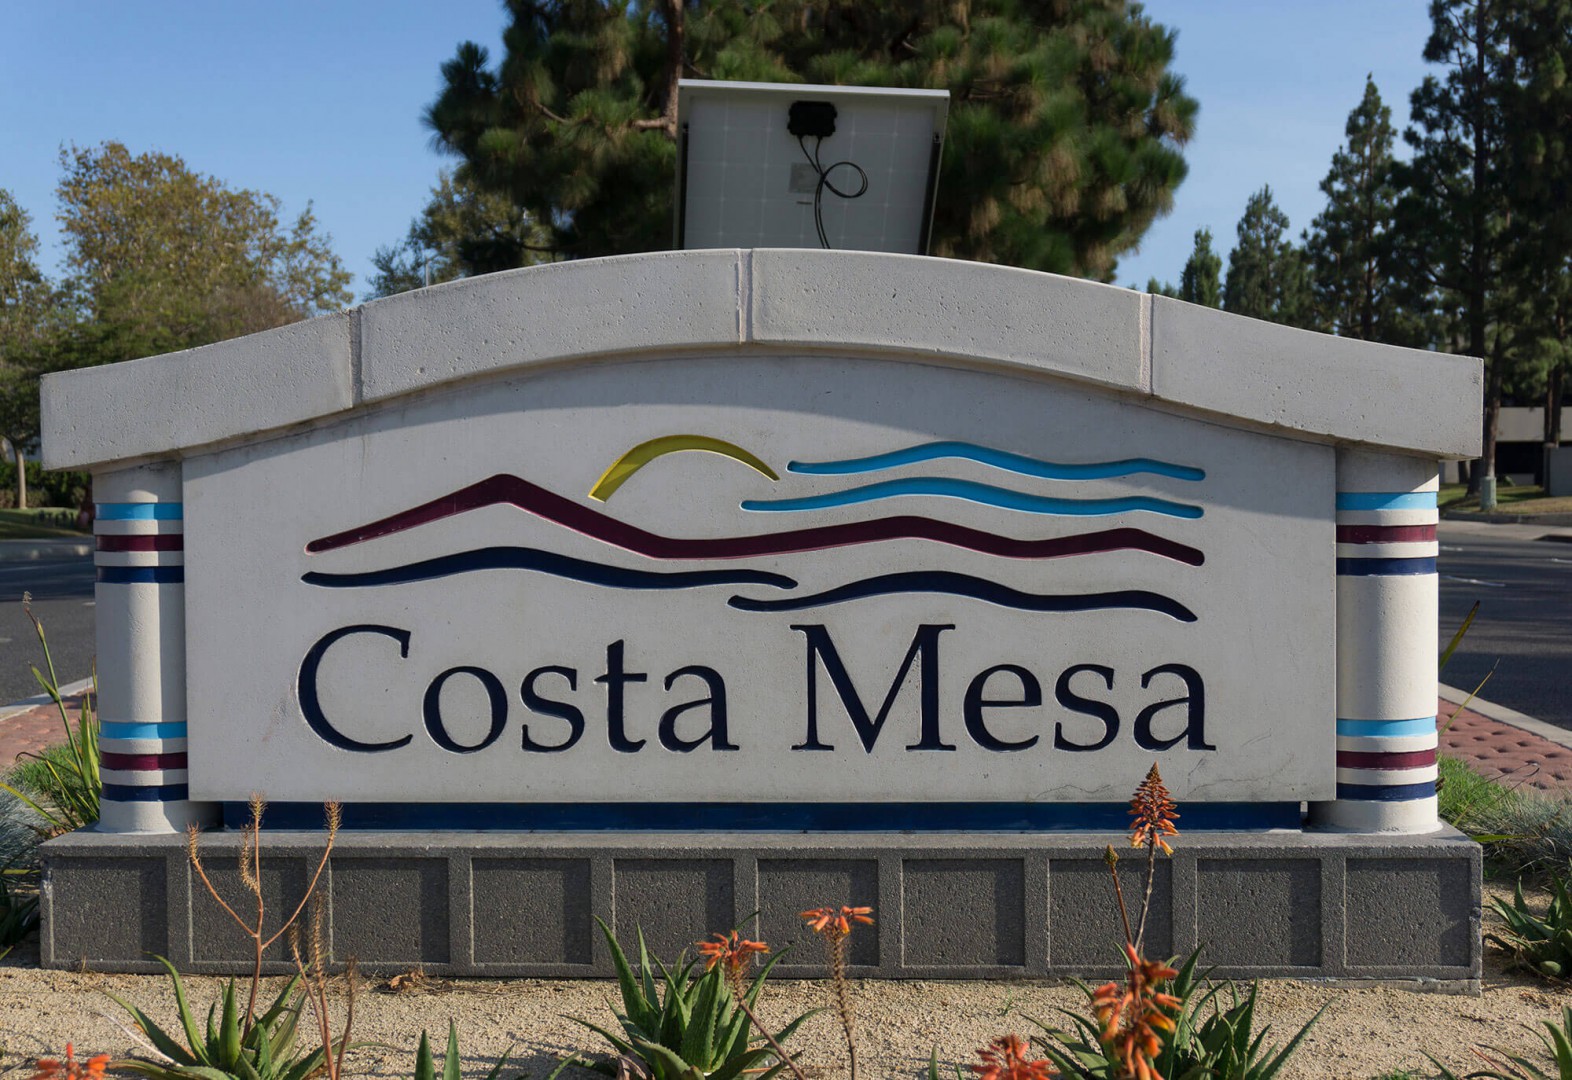 Sign board view located in Costa Mesa County California